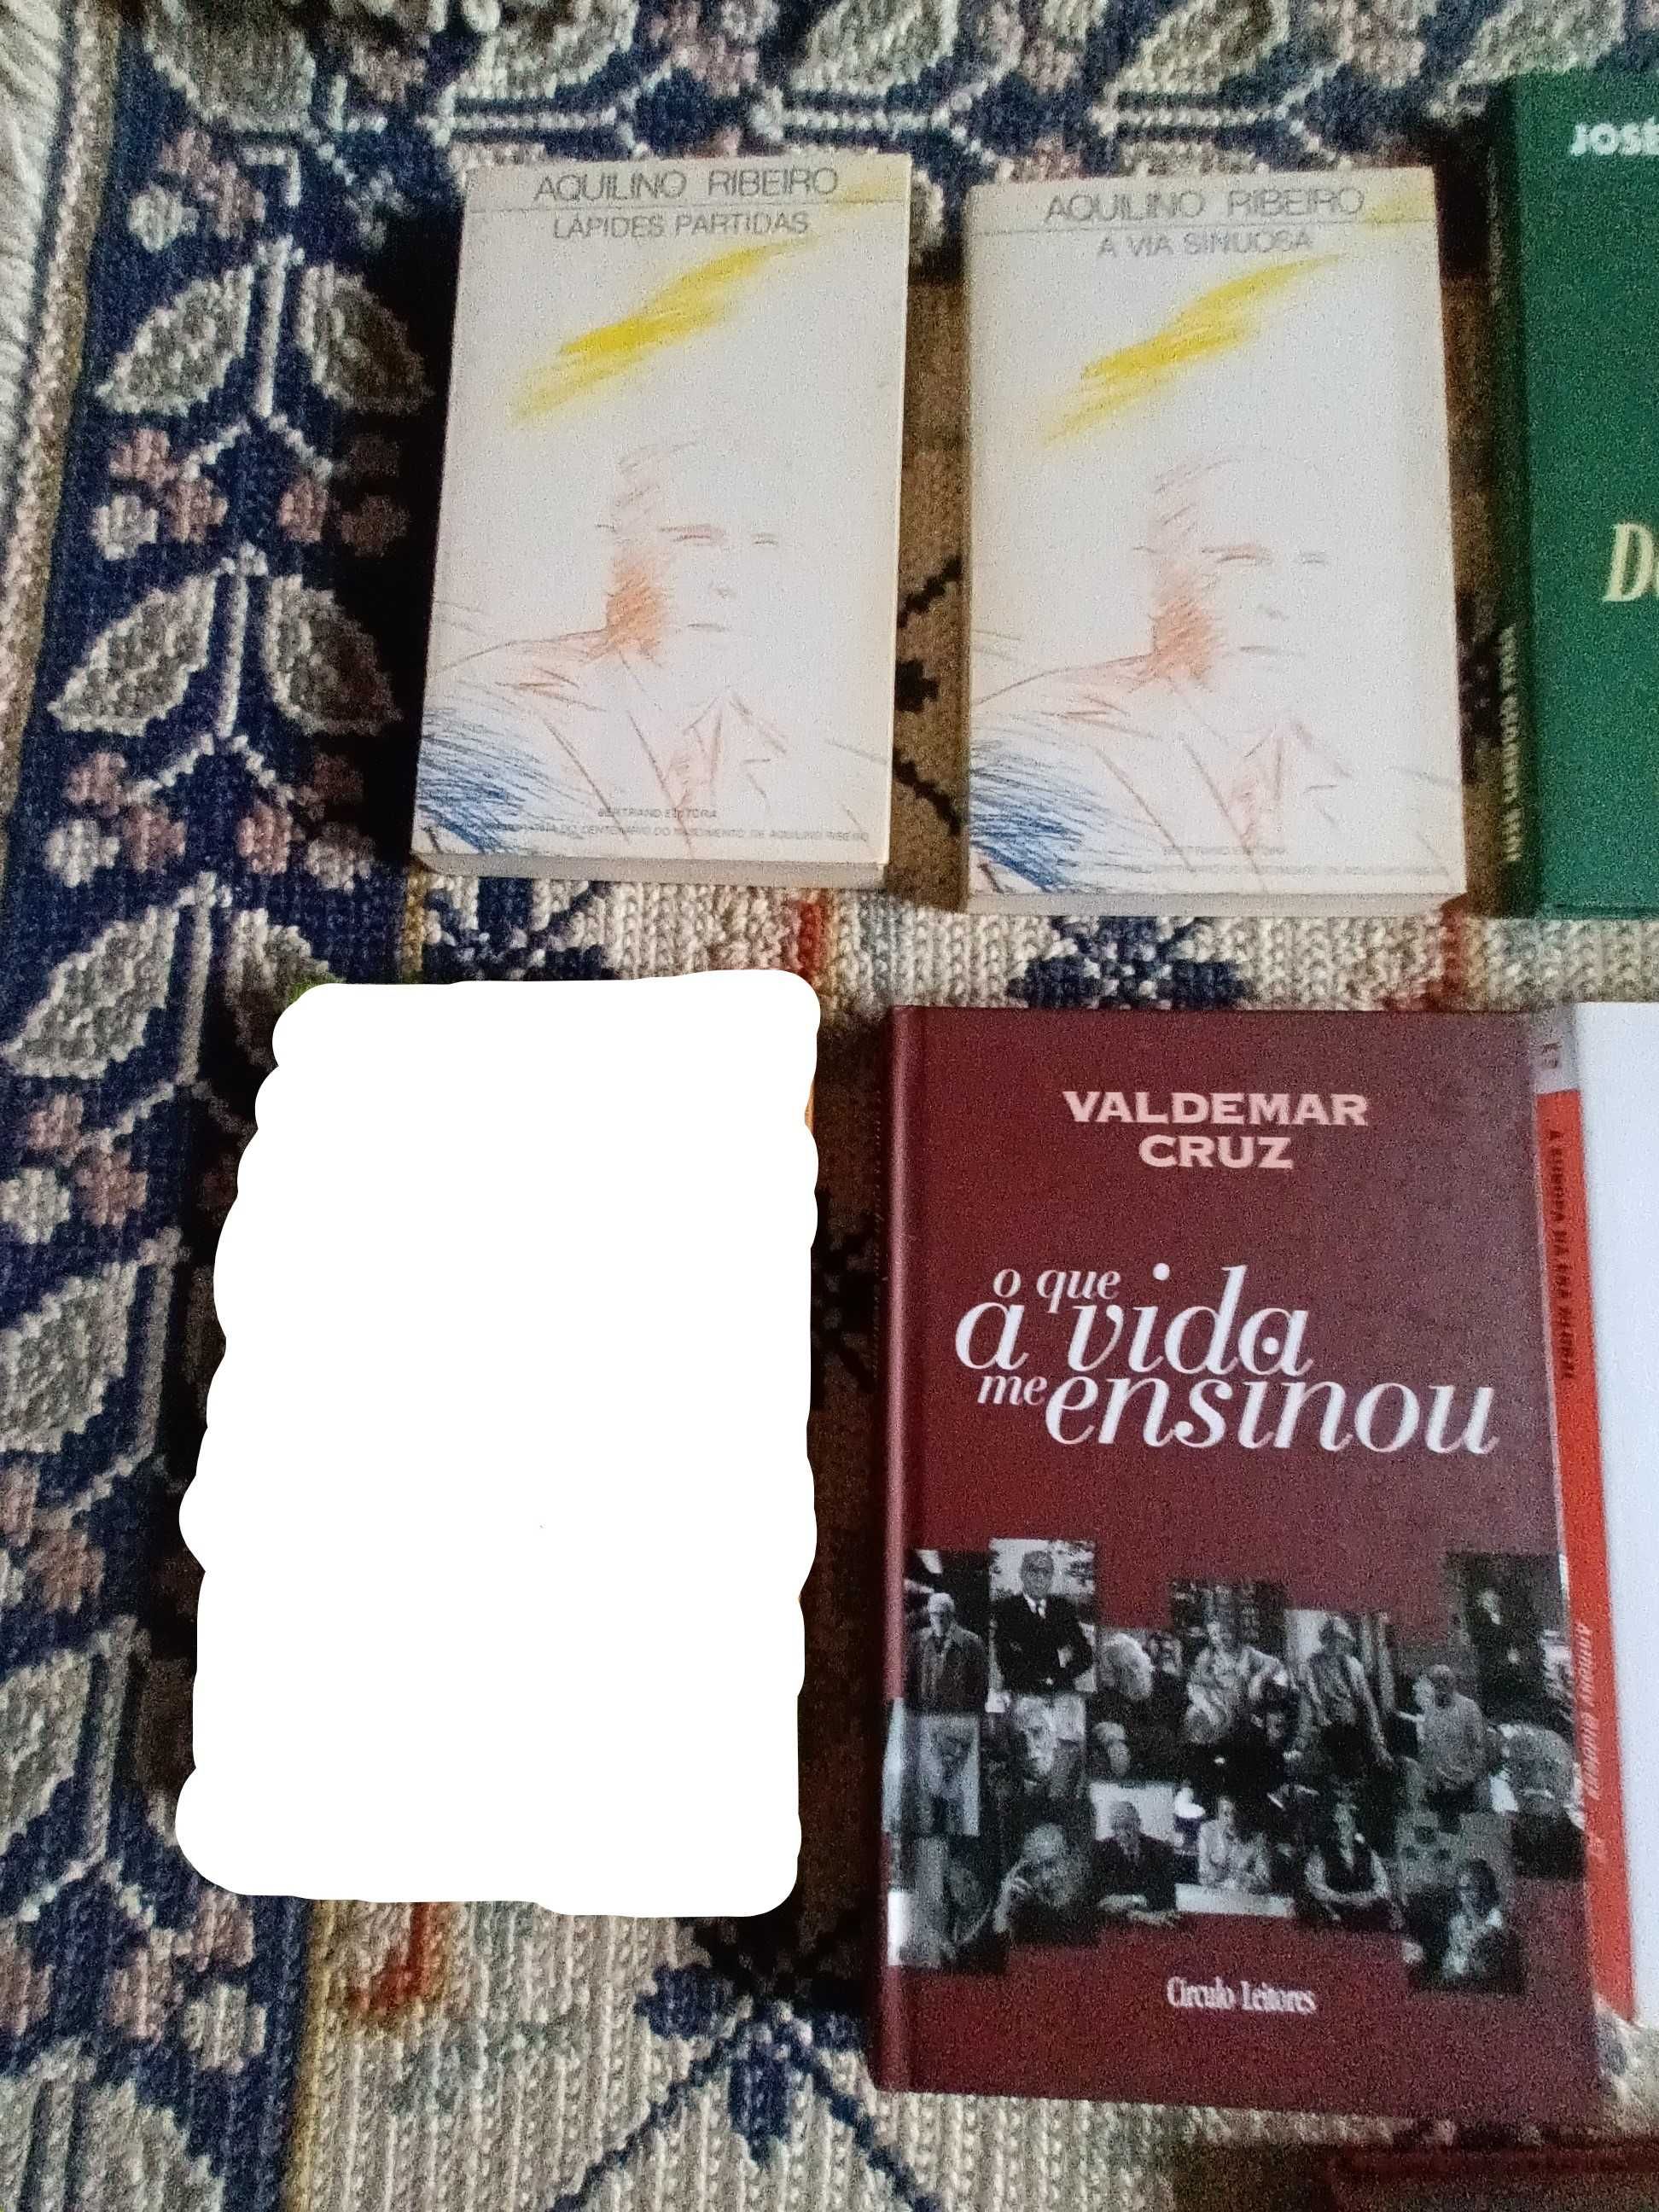 Aquilino Ribeiro e outros livros